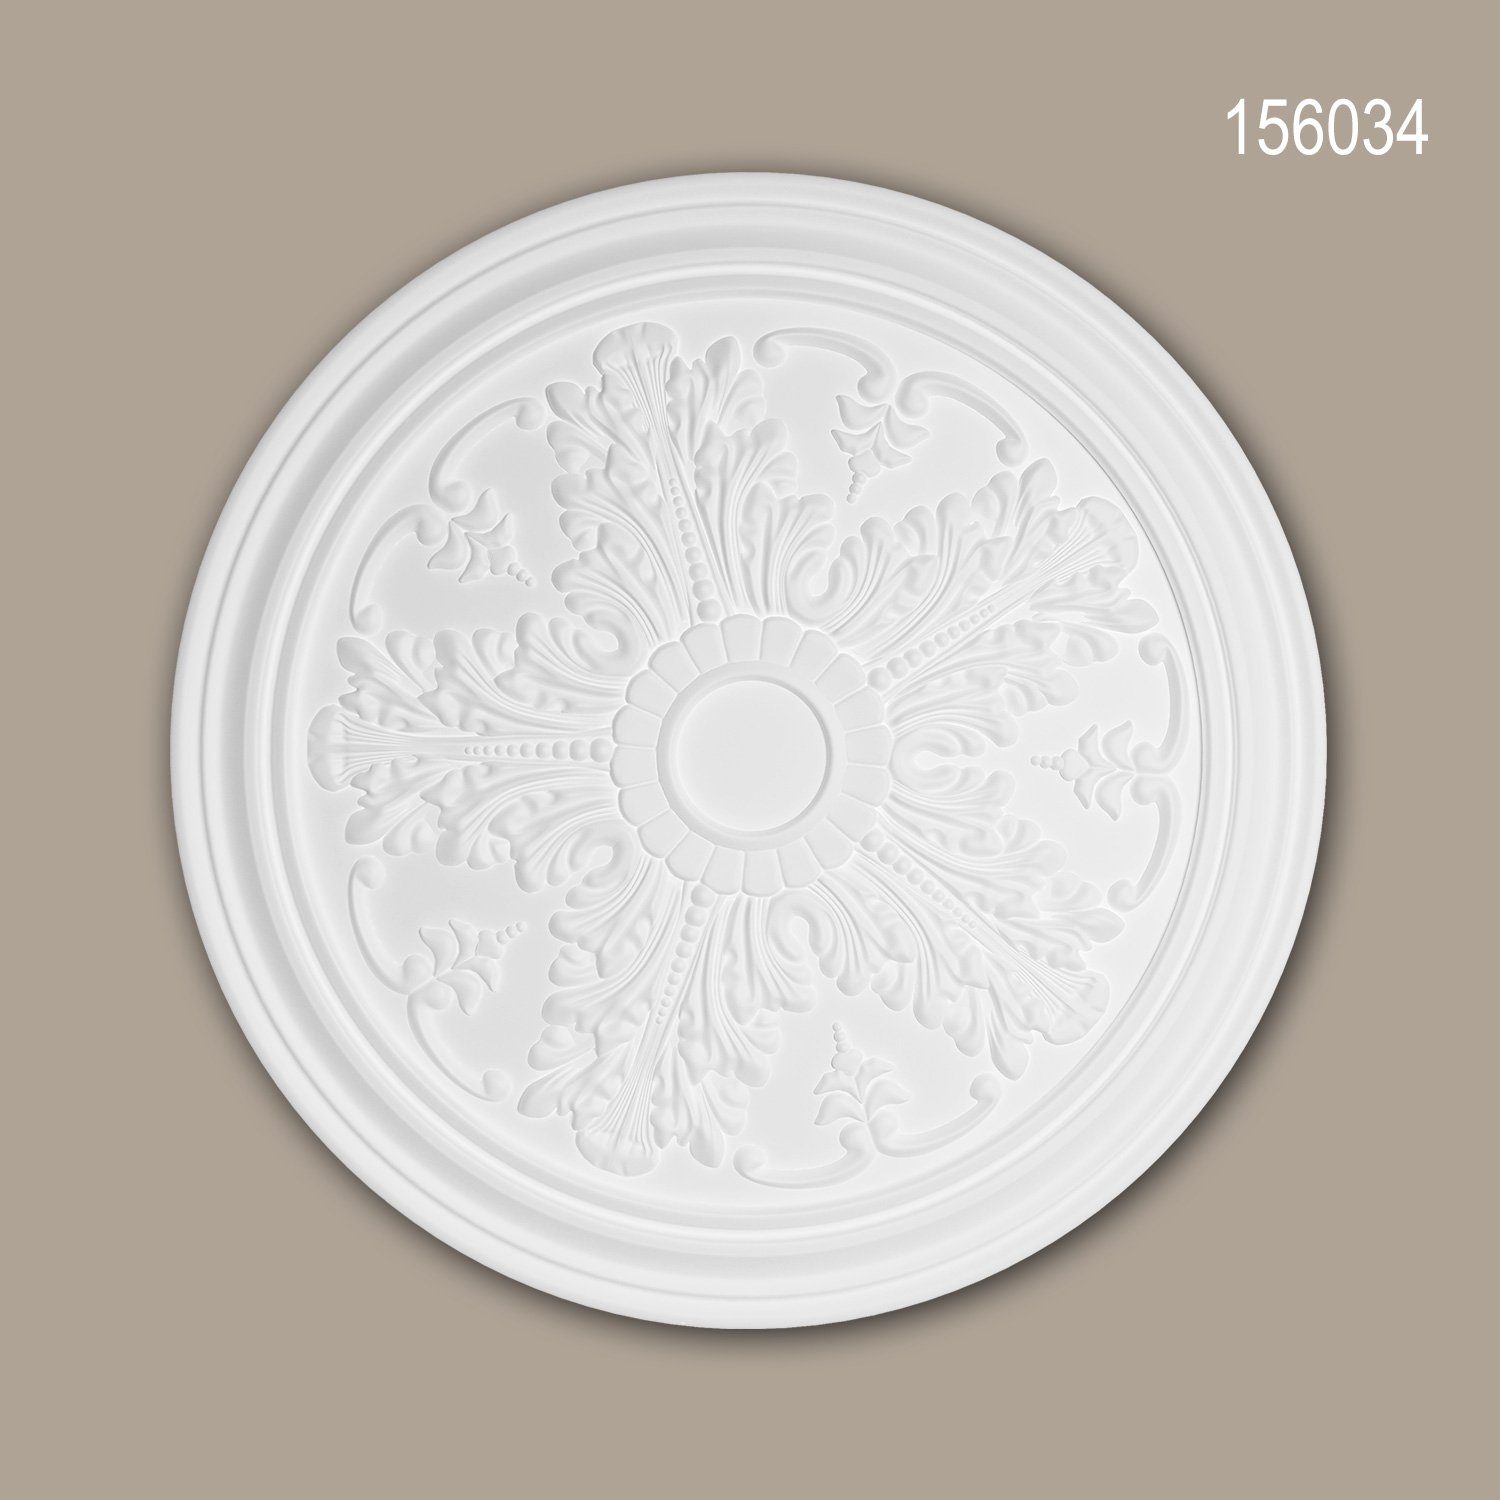 Profhome Decken-Rosette 156034 (Rosette, 1 St., Deckenrosette, Medallion, Stuckrosette, Deckenelement, Zierelement, Durchmesser 51,2 cm), weiß, vorgrundiert, Stil: Neo-Klassizismus